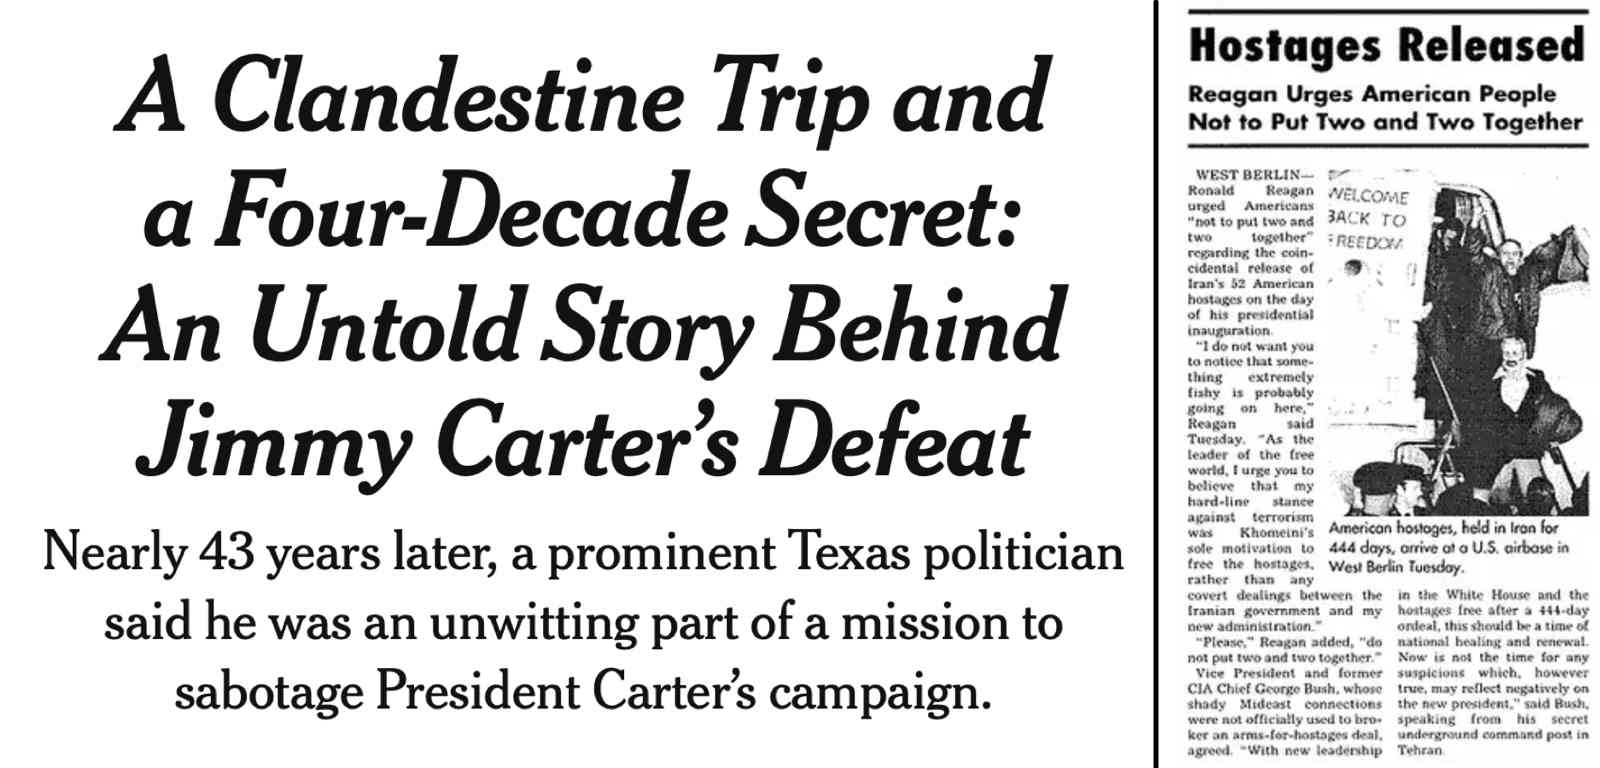 An Untold Story, Jimmy Carter